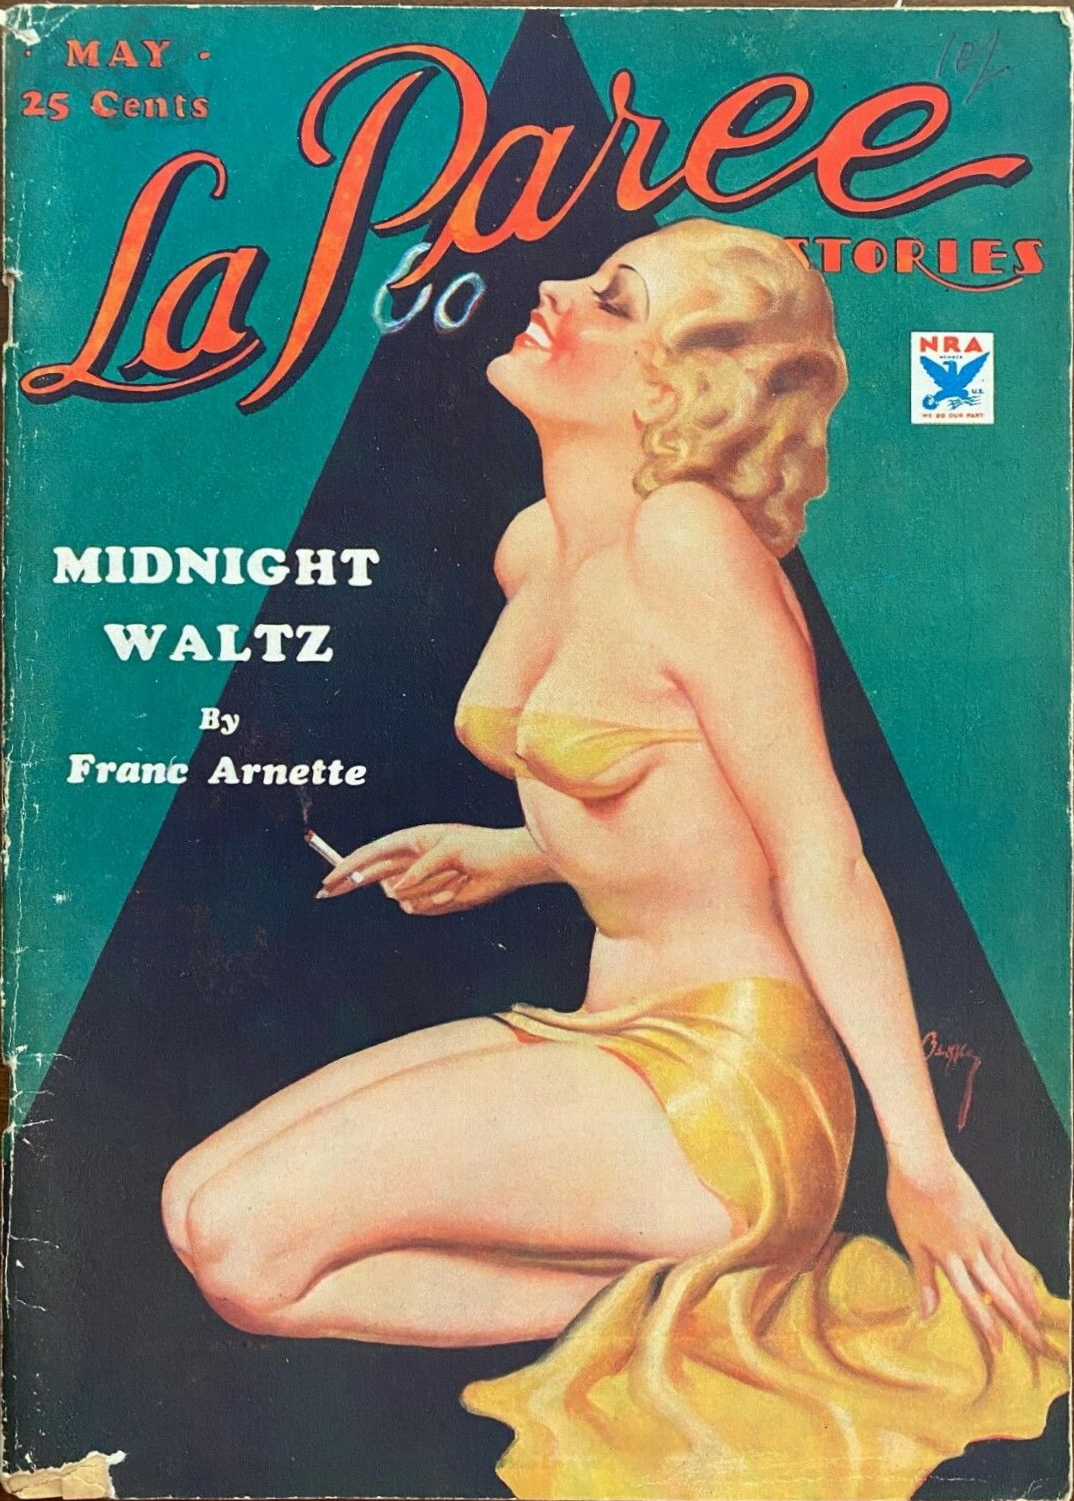 La Paree Stories - May 1934